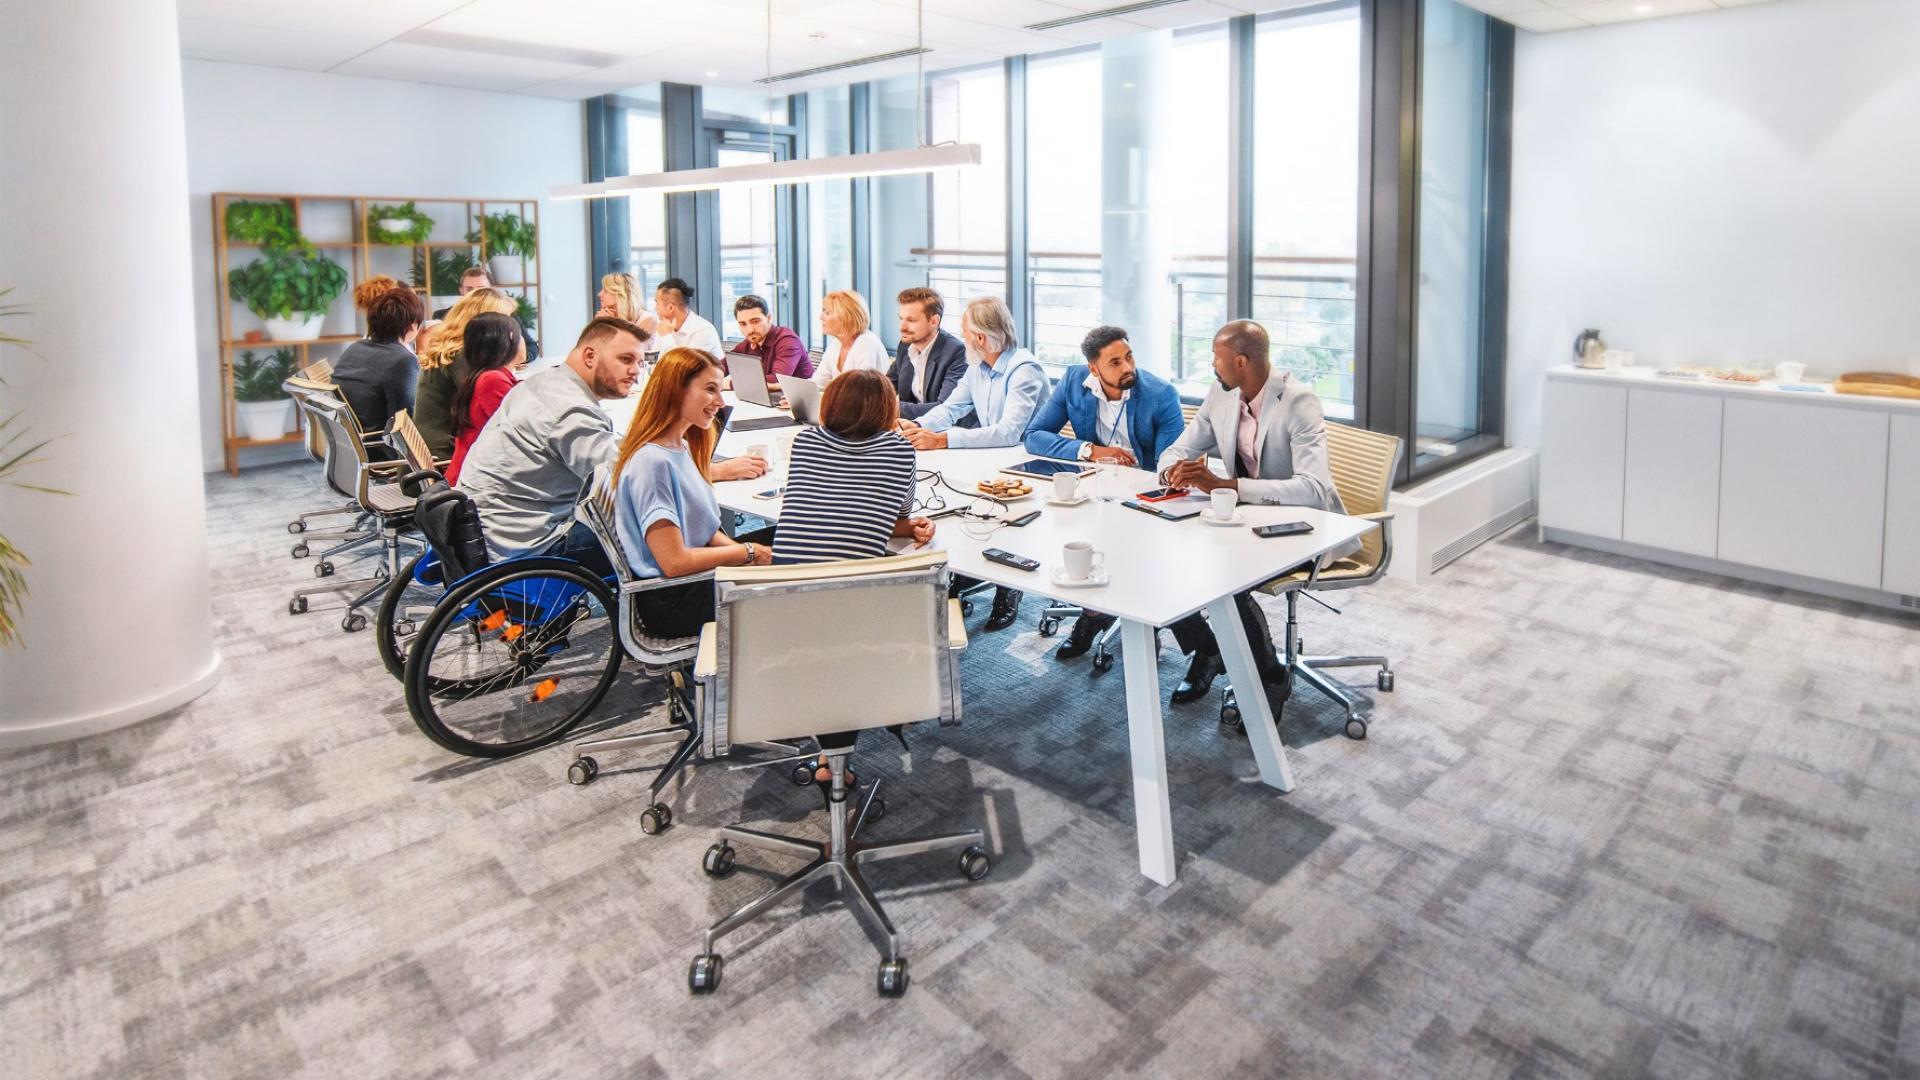 In einem Meetingraum sitzen mehre Personen, darunter auch ein Rollstuhlfahrer, an einme großen weißen Tisch.